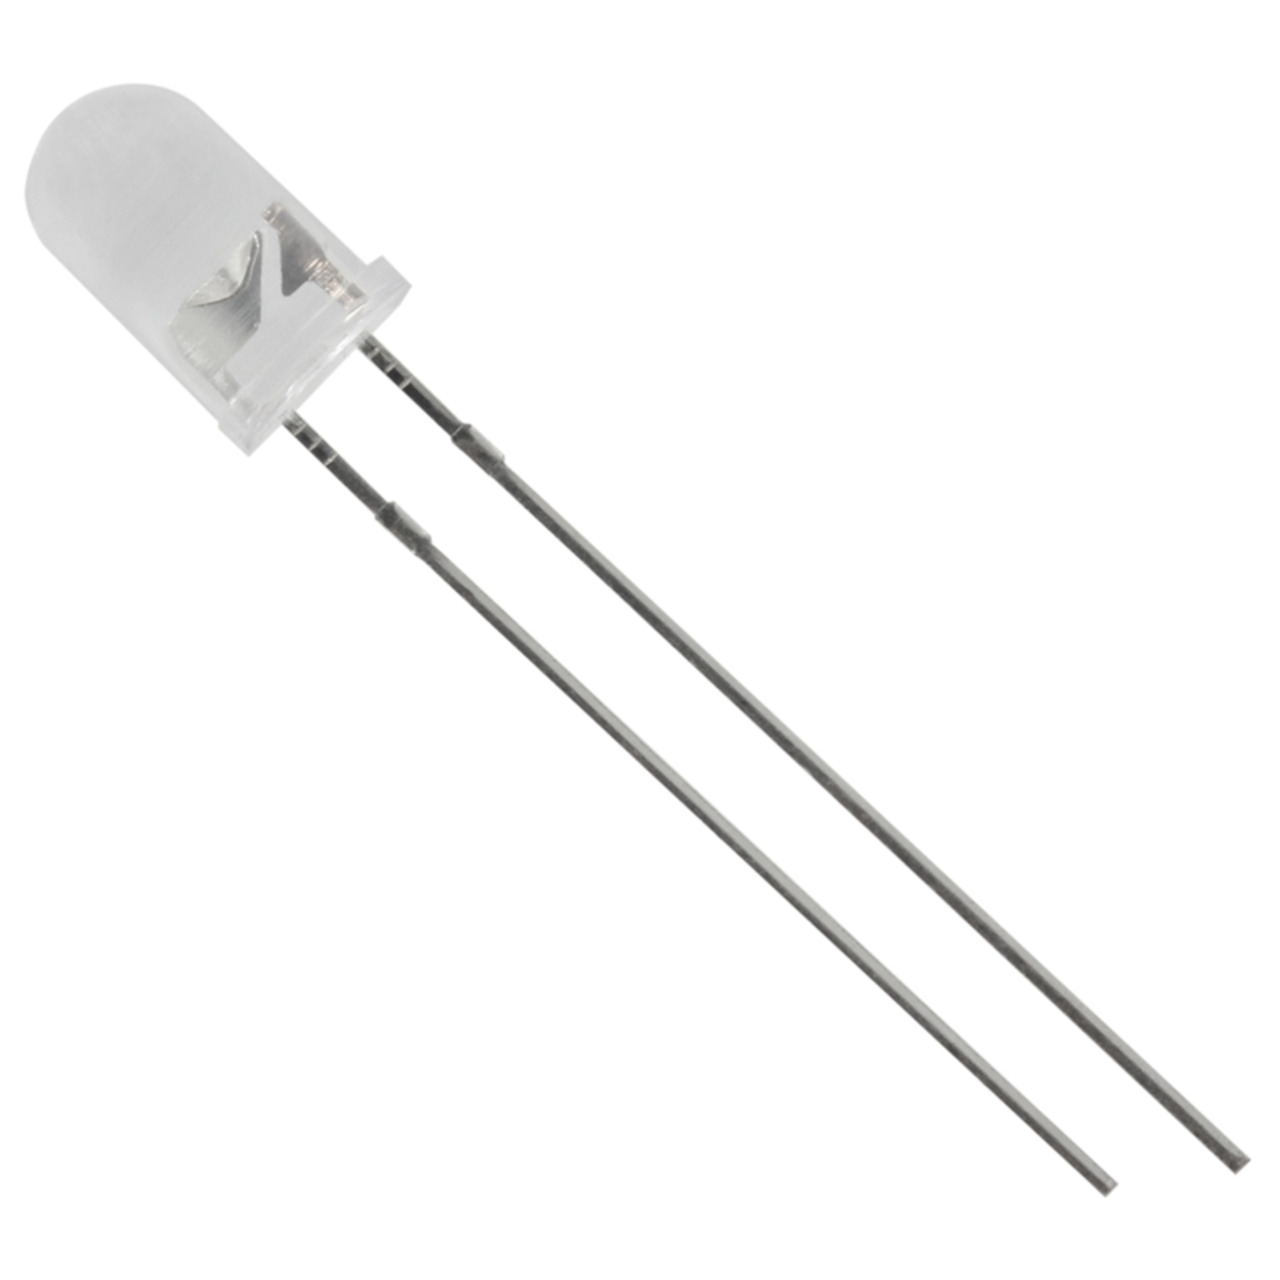 HUIYUAN Opto-Electronic Superhelle 5 mm LED- Weiss- 9-500 mcd unter Komponenten